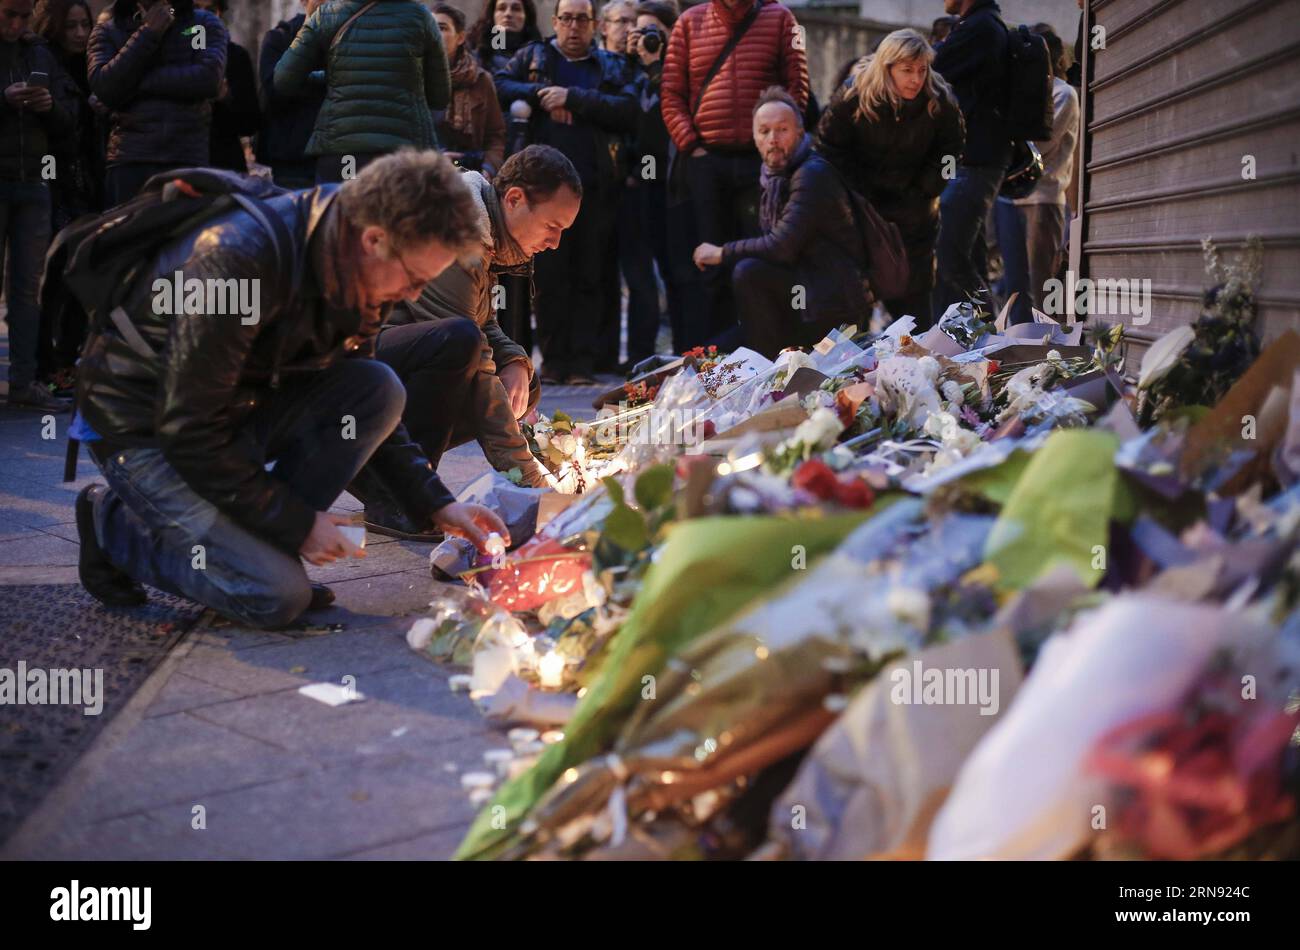 (151114) -- PARIS, 14 novembre 2015 -- des gens placent des fleurs et des bougies pour rendre hommage aux victimes devant le restaurant le petit Cambodge où une attaque a eu lieu vendredi à Paris, France, le 14 novembre 2015. Le président français François Hollande a annoncé samedi un deuil national de trois jours. FRANCE-PARIS-ATTACKS-DEUIL ZhouxLei PUBLICATIONxNOTxINxCHN Terroranschläge à Paris - Tatort le petit Cambodge - Gedenken an die Opfer 151114 Paris nov 14 2015 célébrités placent des fleurs et des bougies pour rendre hommage aux victimes devant le restaurant le petit Cambodge où attaquer s'est produit LE vendredi Banque D'Images